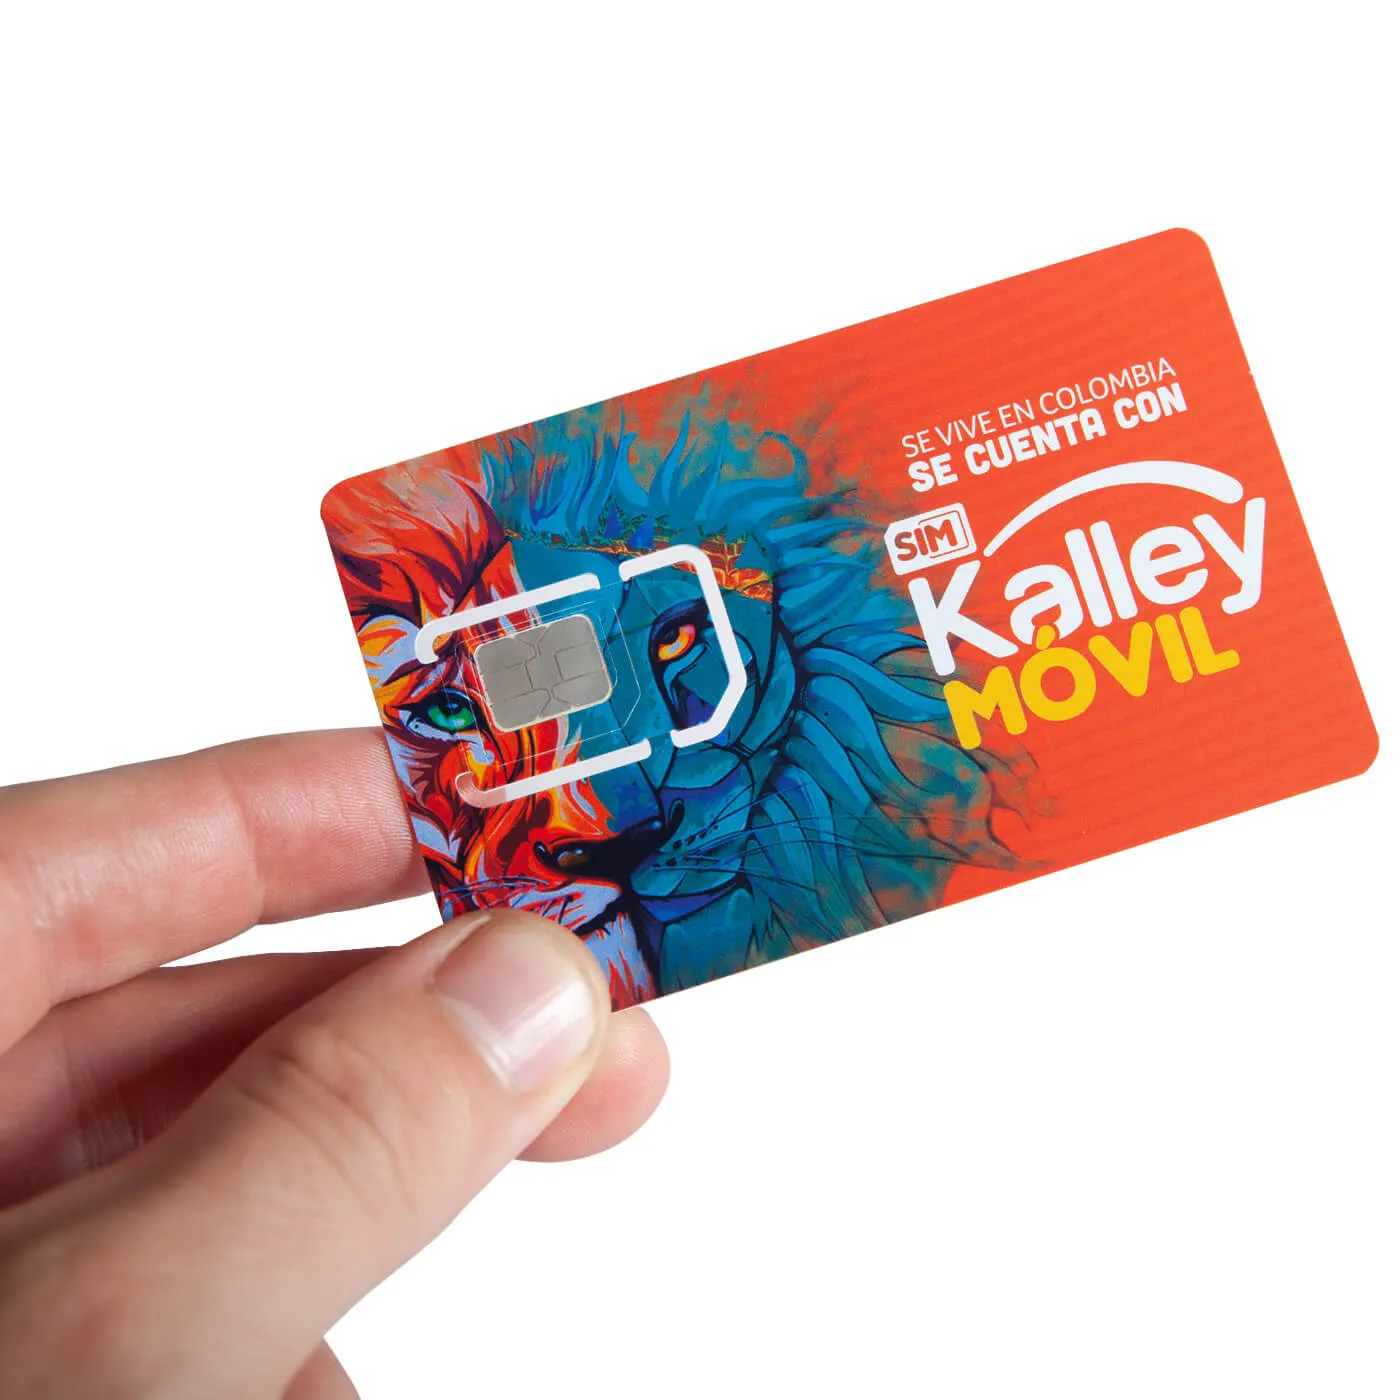 Sim card Kalley Móvil con paquete $31.000